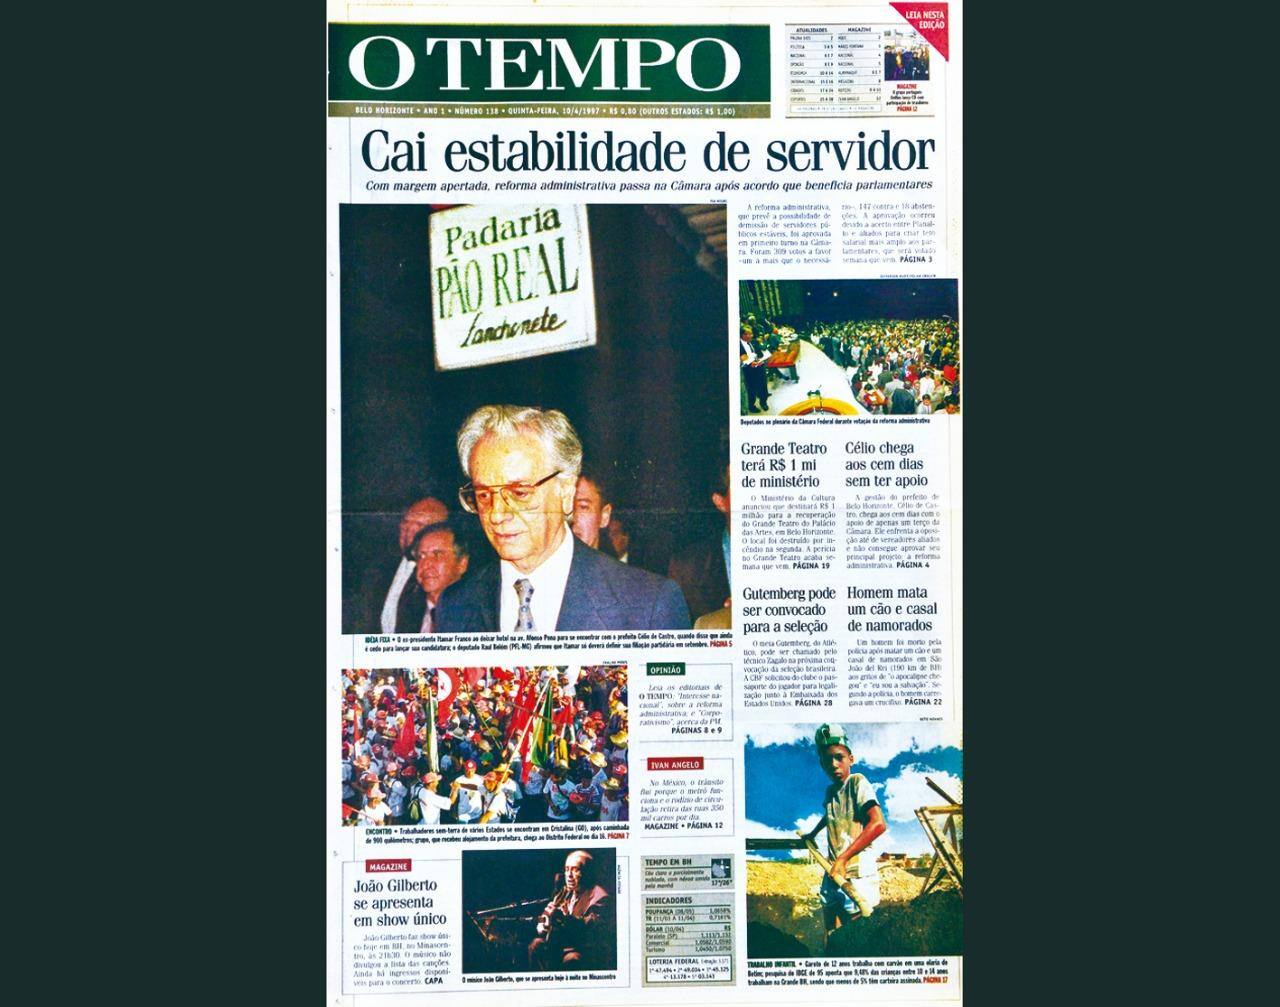 Capa do jornal O TEMPO no dia 10.4.1997; resgate do acervo marca as comemorações dos 25 anos da publicação